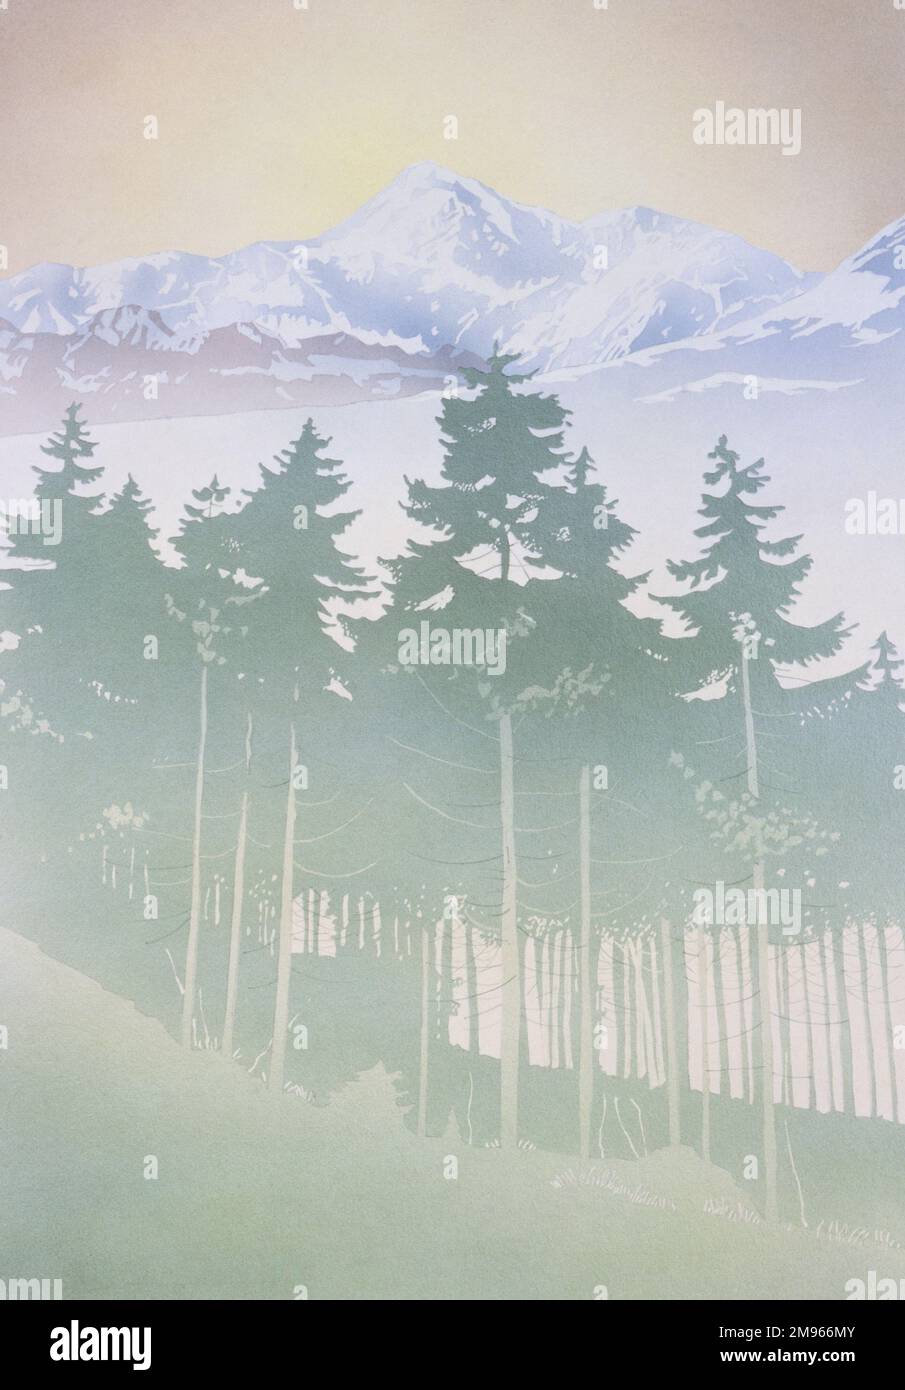 Une vue lumineuse et atmosphérique des montagnes vue à travers les silhouettes vertes de sapins sur les pentes inférieures. Peinture par Malcolm Greensmith. Banque D'Images